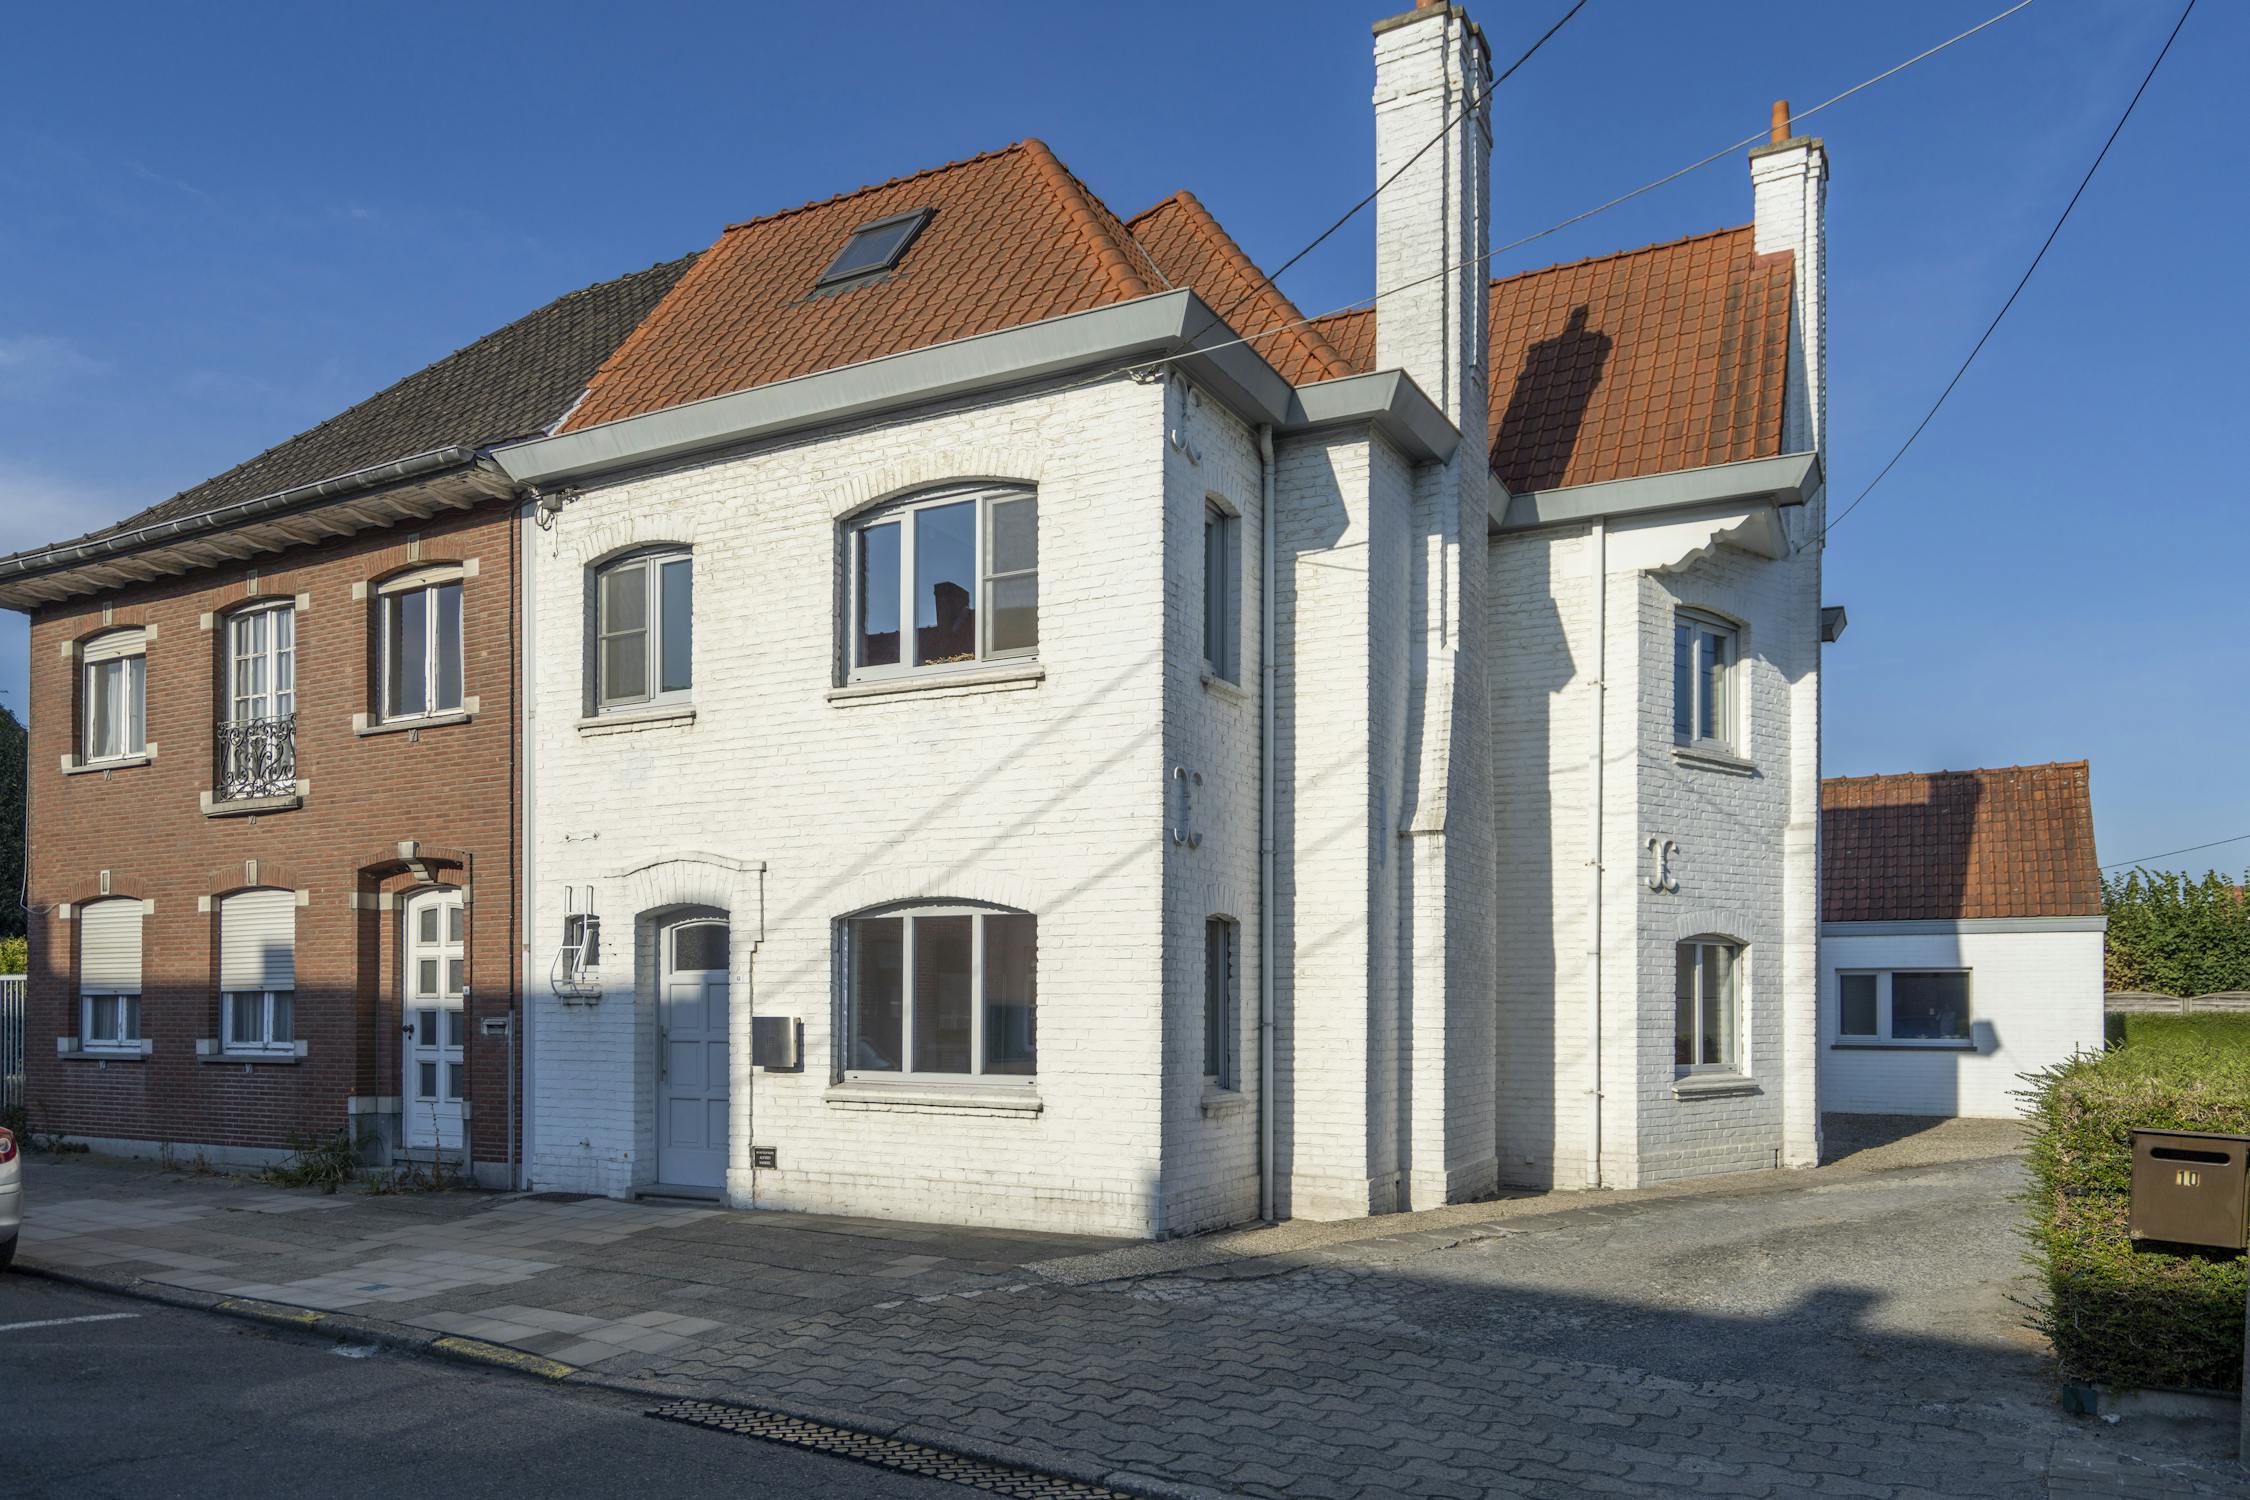 Huis verkocht in 12, Kortrijk - Dewaele